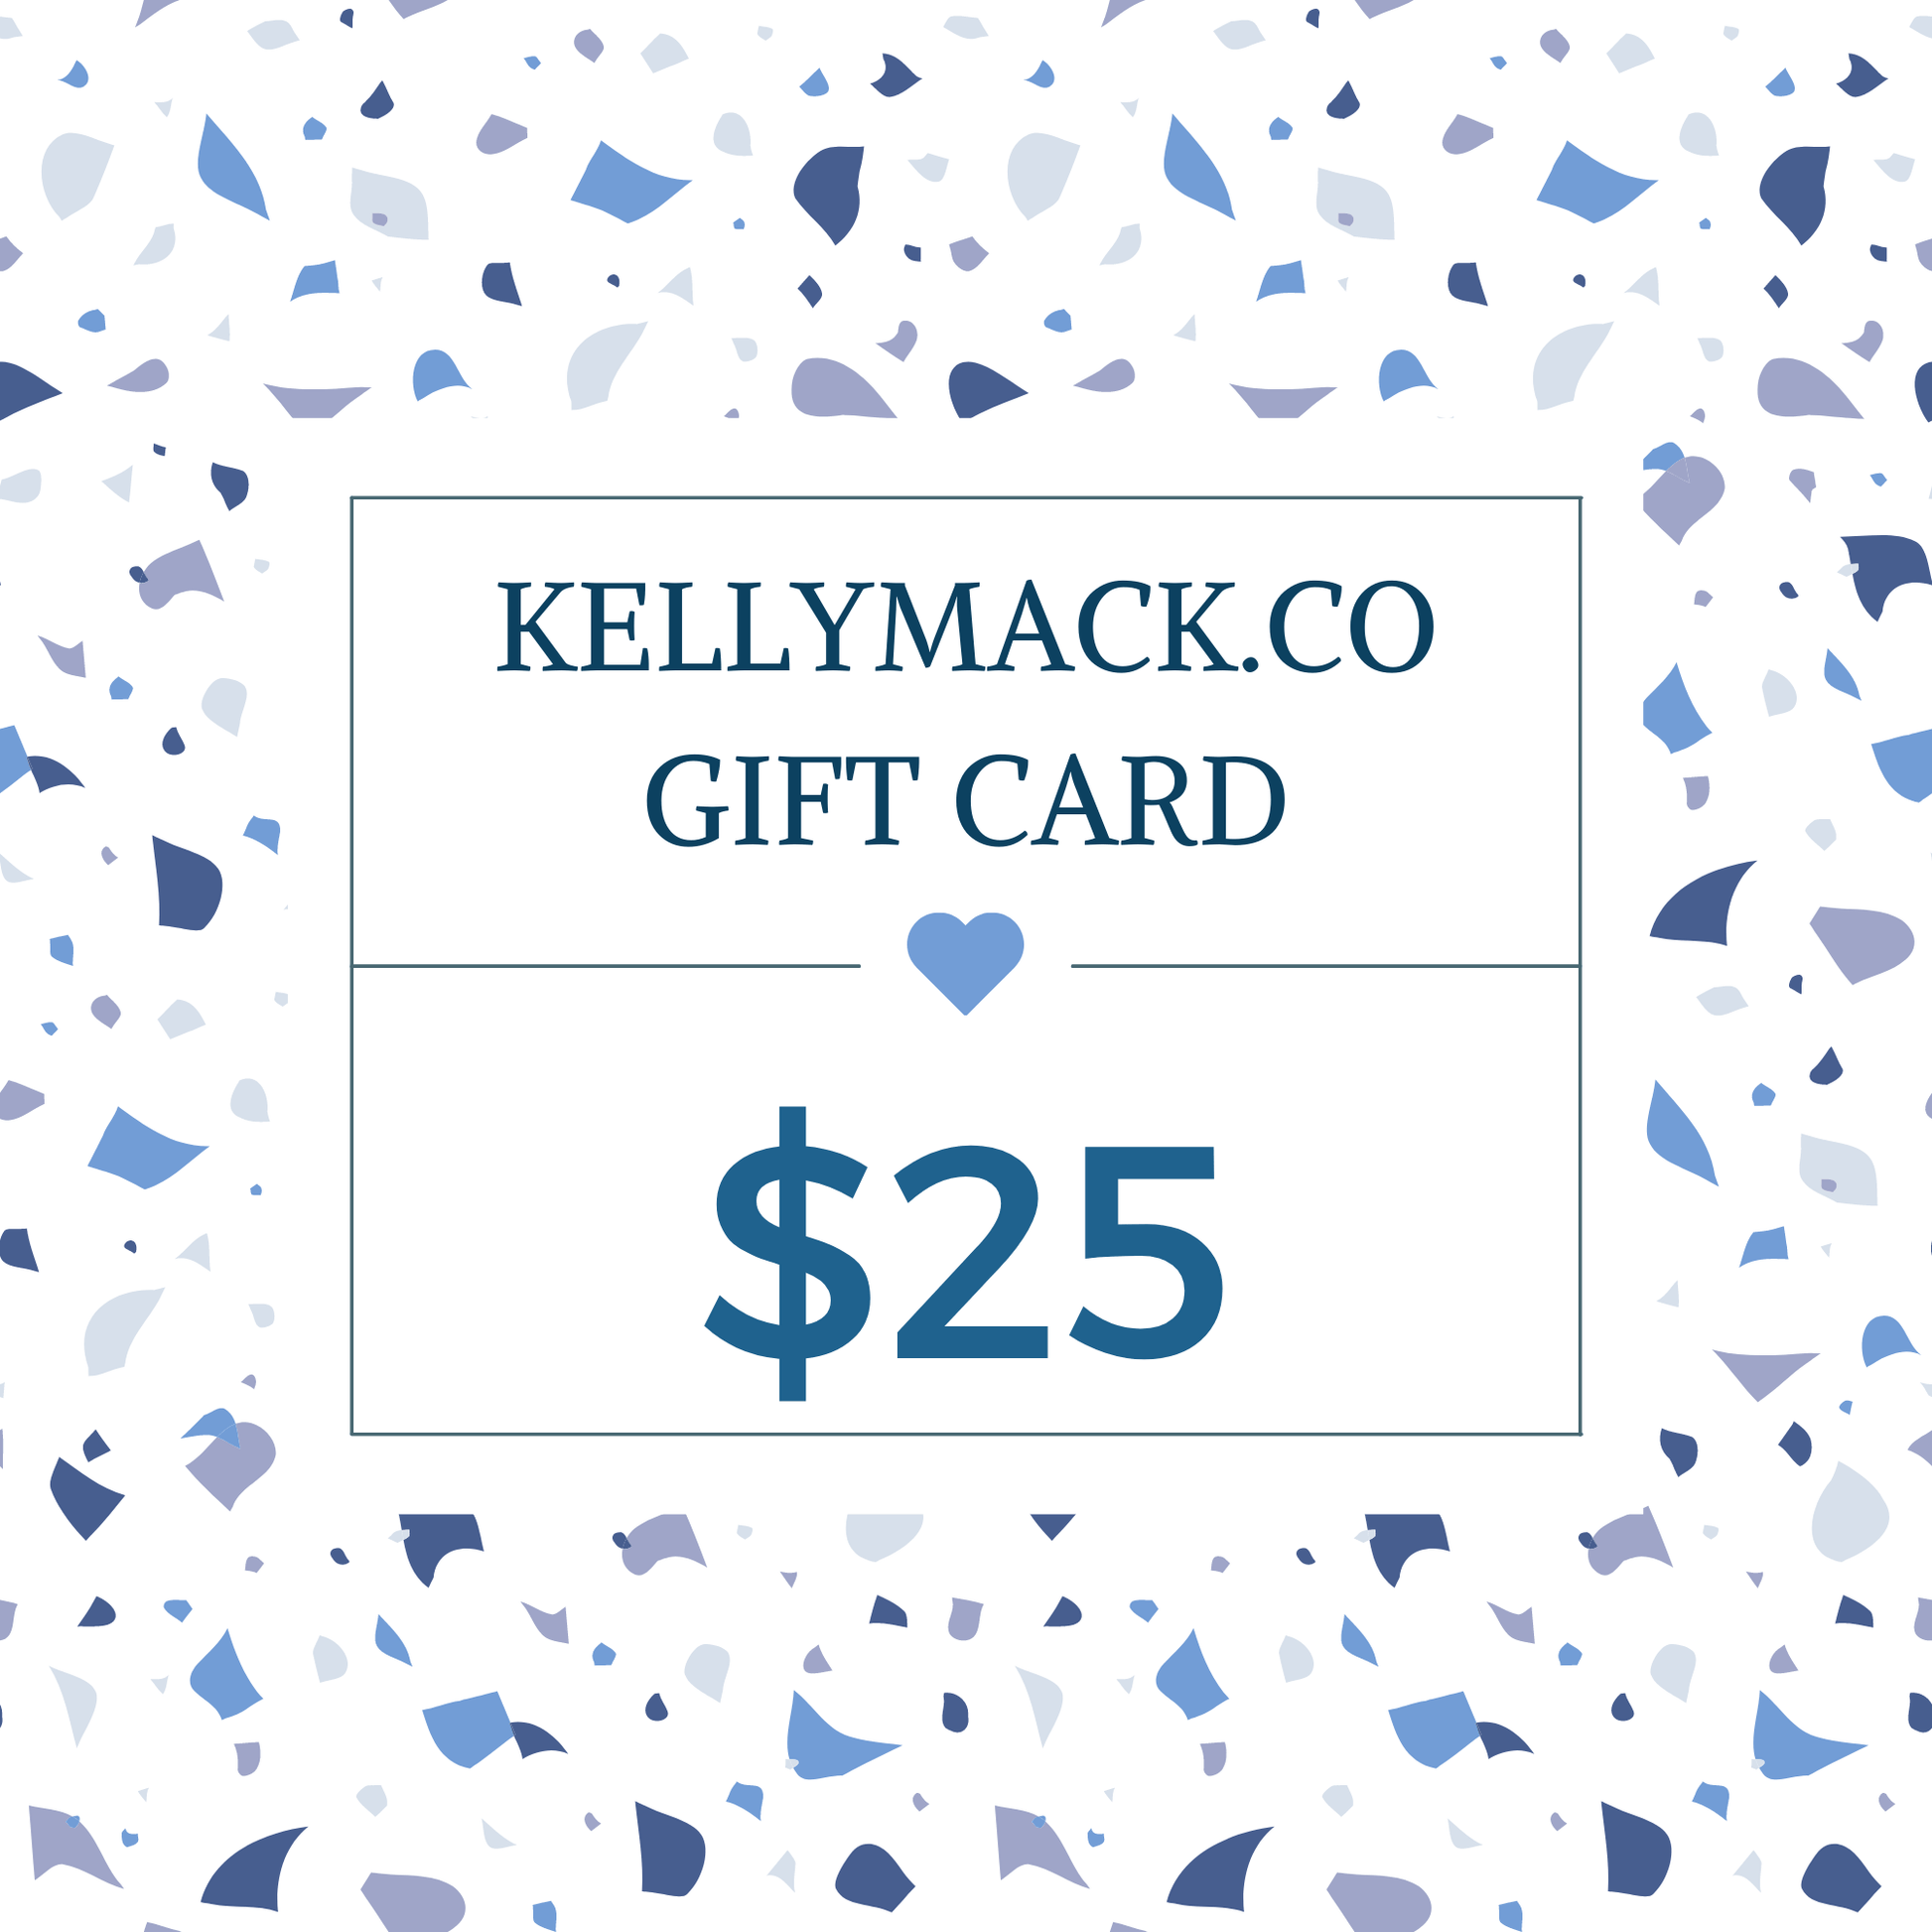 KellyMack.Co gift card $25.00 KellyMack.Co Gift Card